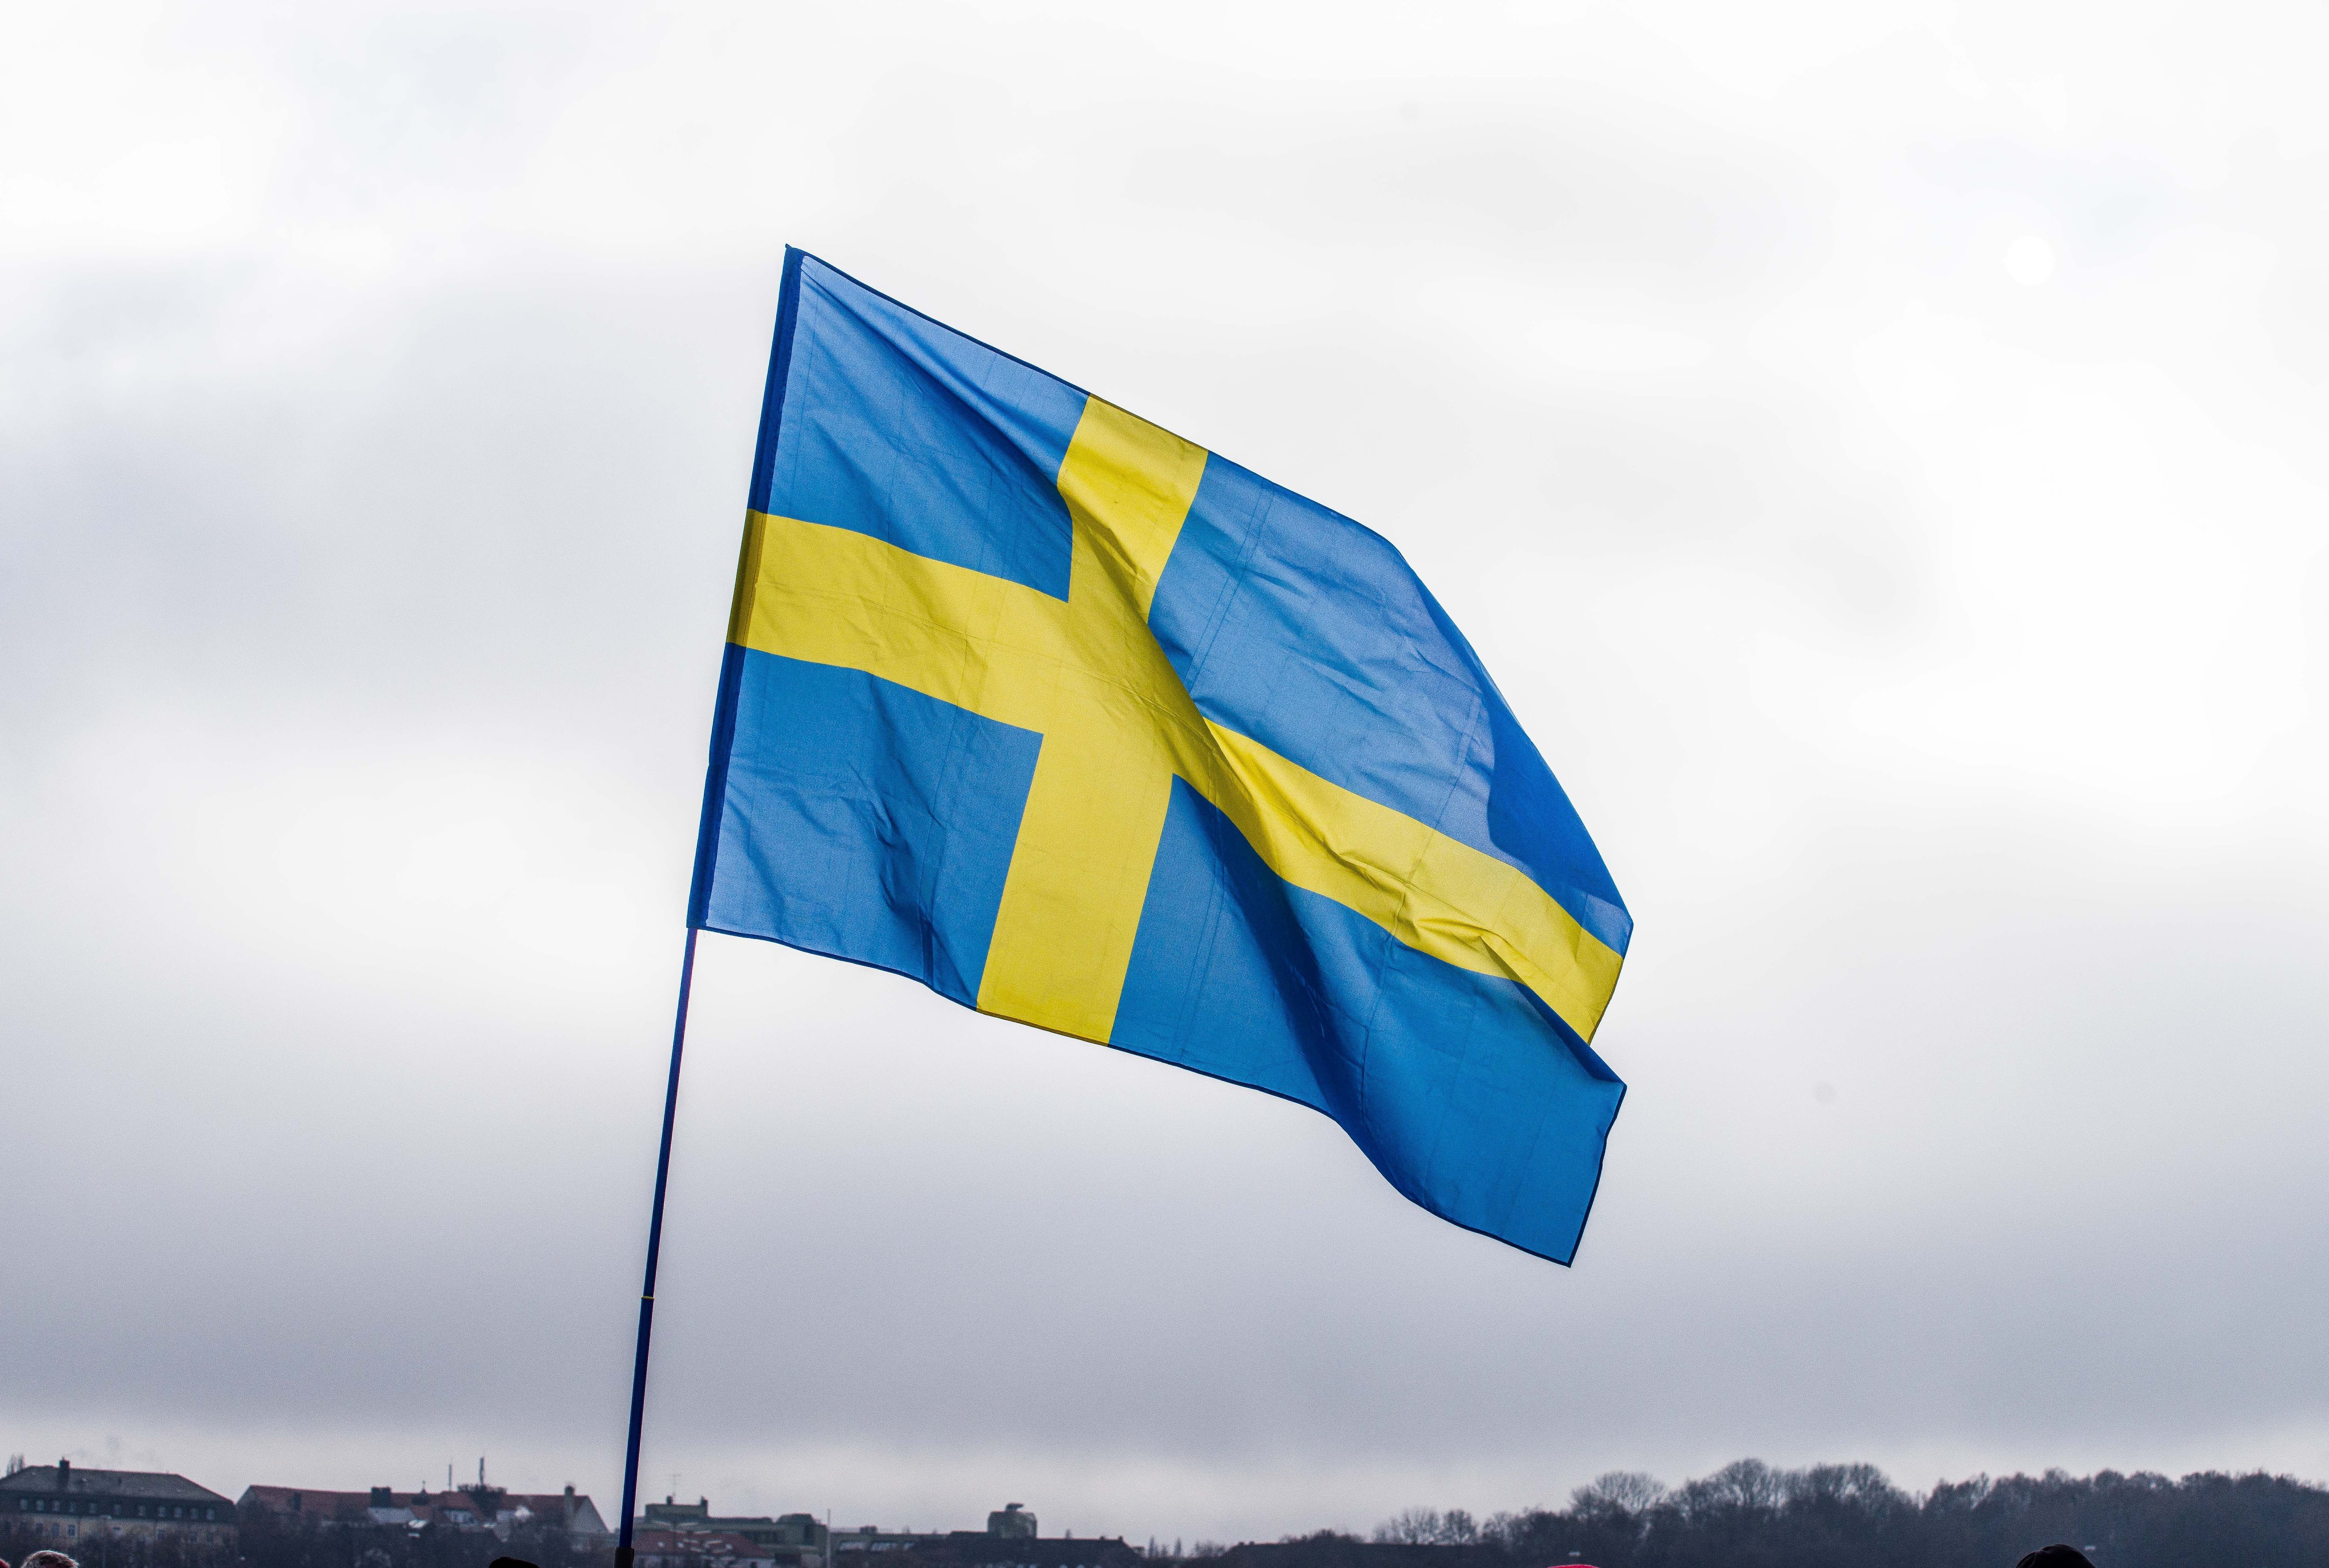 17/04/2022 Bandera de Suecia.

POLITICA EUROPA SUECIA

SACHELLE BABBAR / ZUMA PRESS / CONTACTOPHOTO

